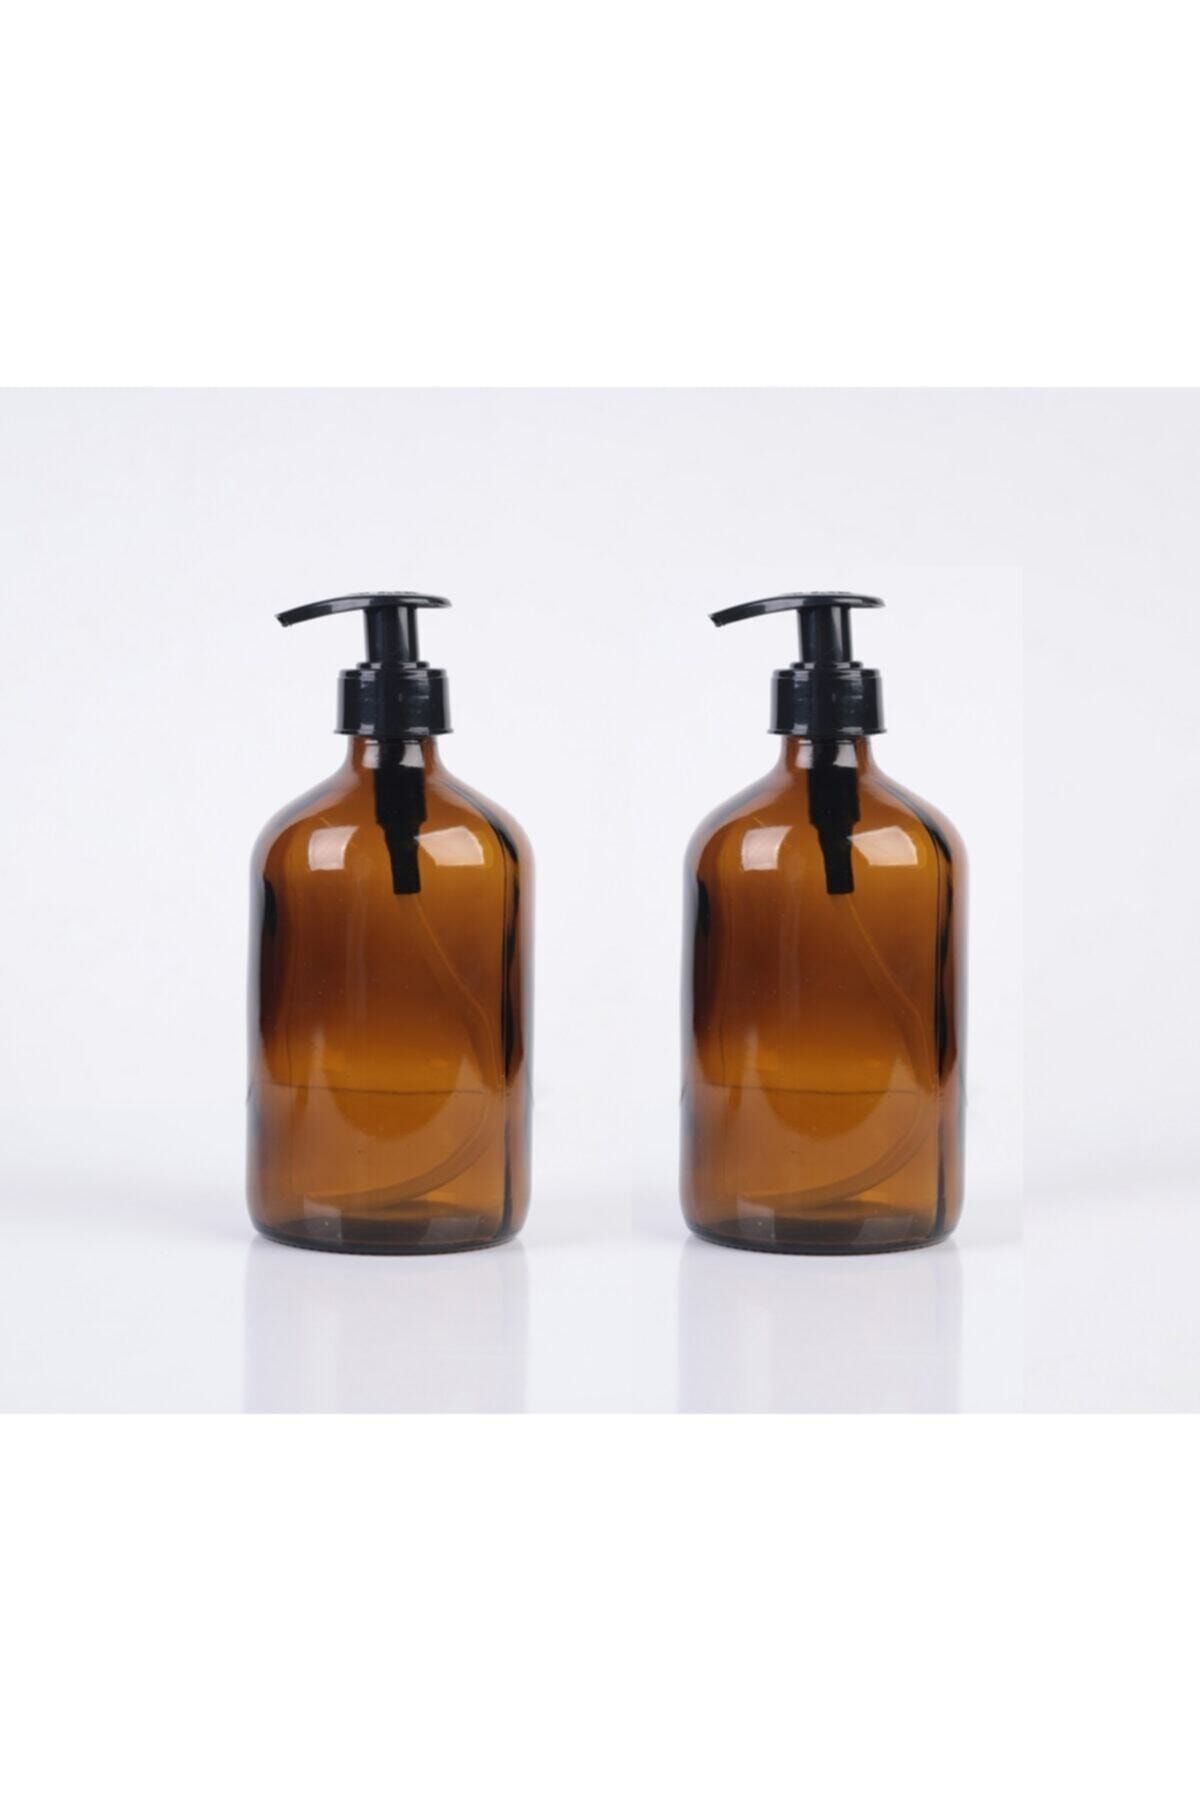 Paşa Cam Amber Cam Şişe Sıvı Sabun El Sabunu Bulaşık Deterjanı Şampuan Duş Jeli Losyon Çeşitleri 500ml 2 Adet